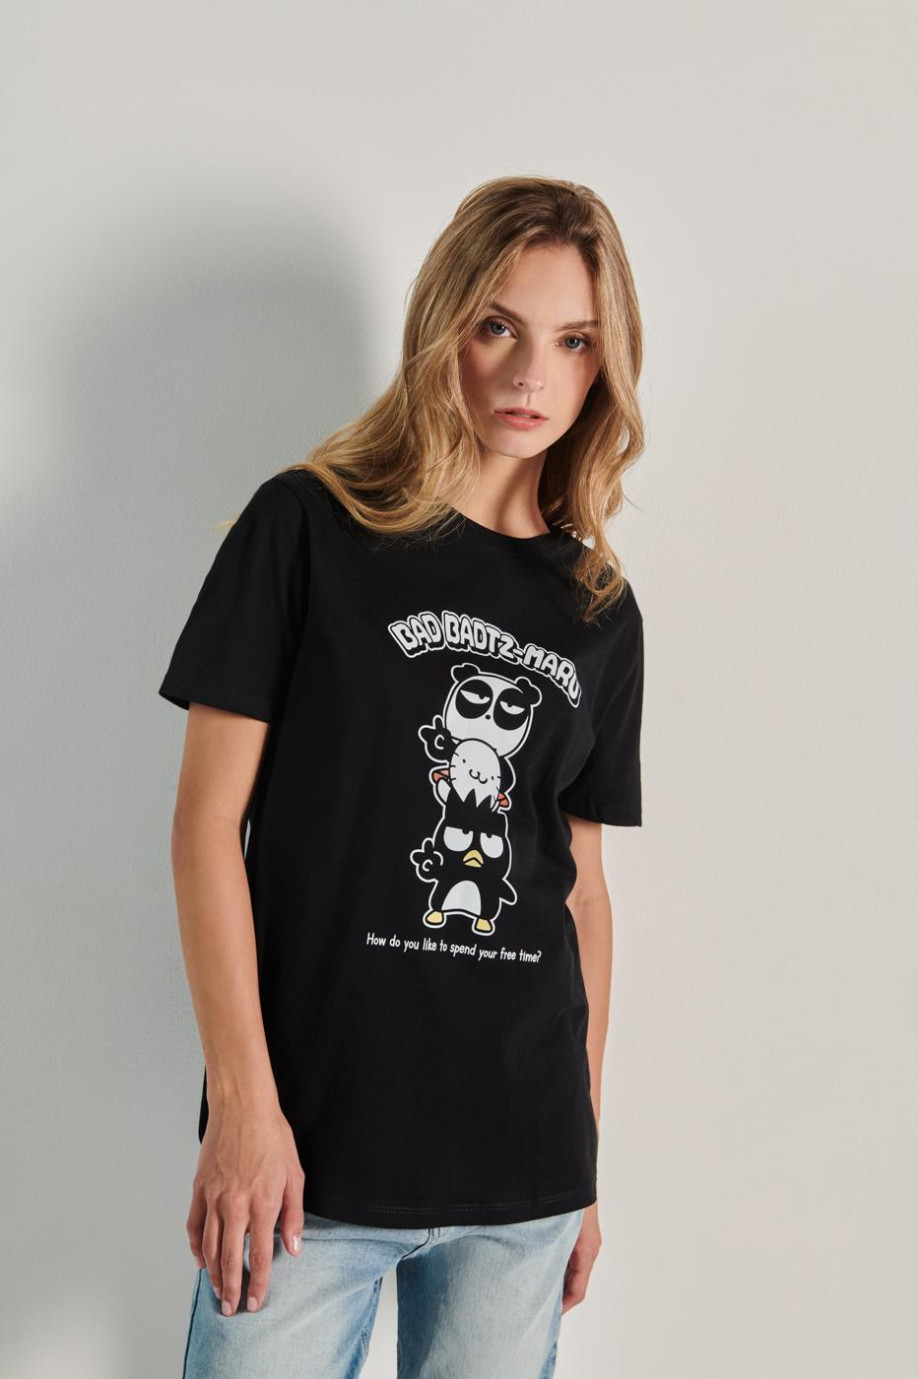 Camiseta unicolor con diseño de Badtz-Maru y manga corta